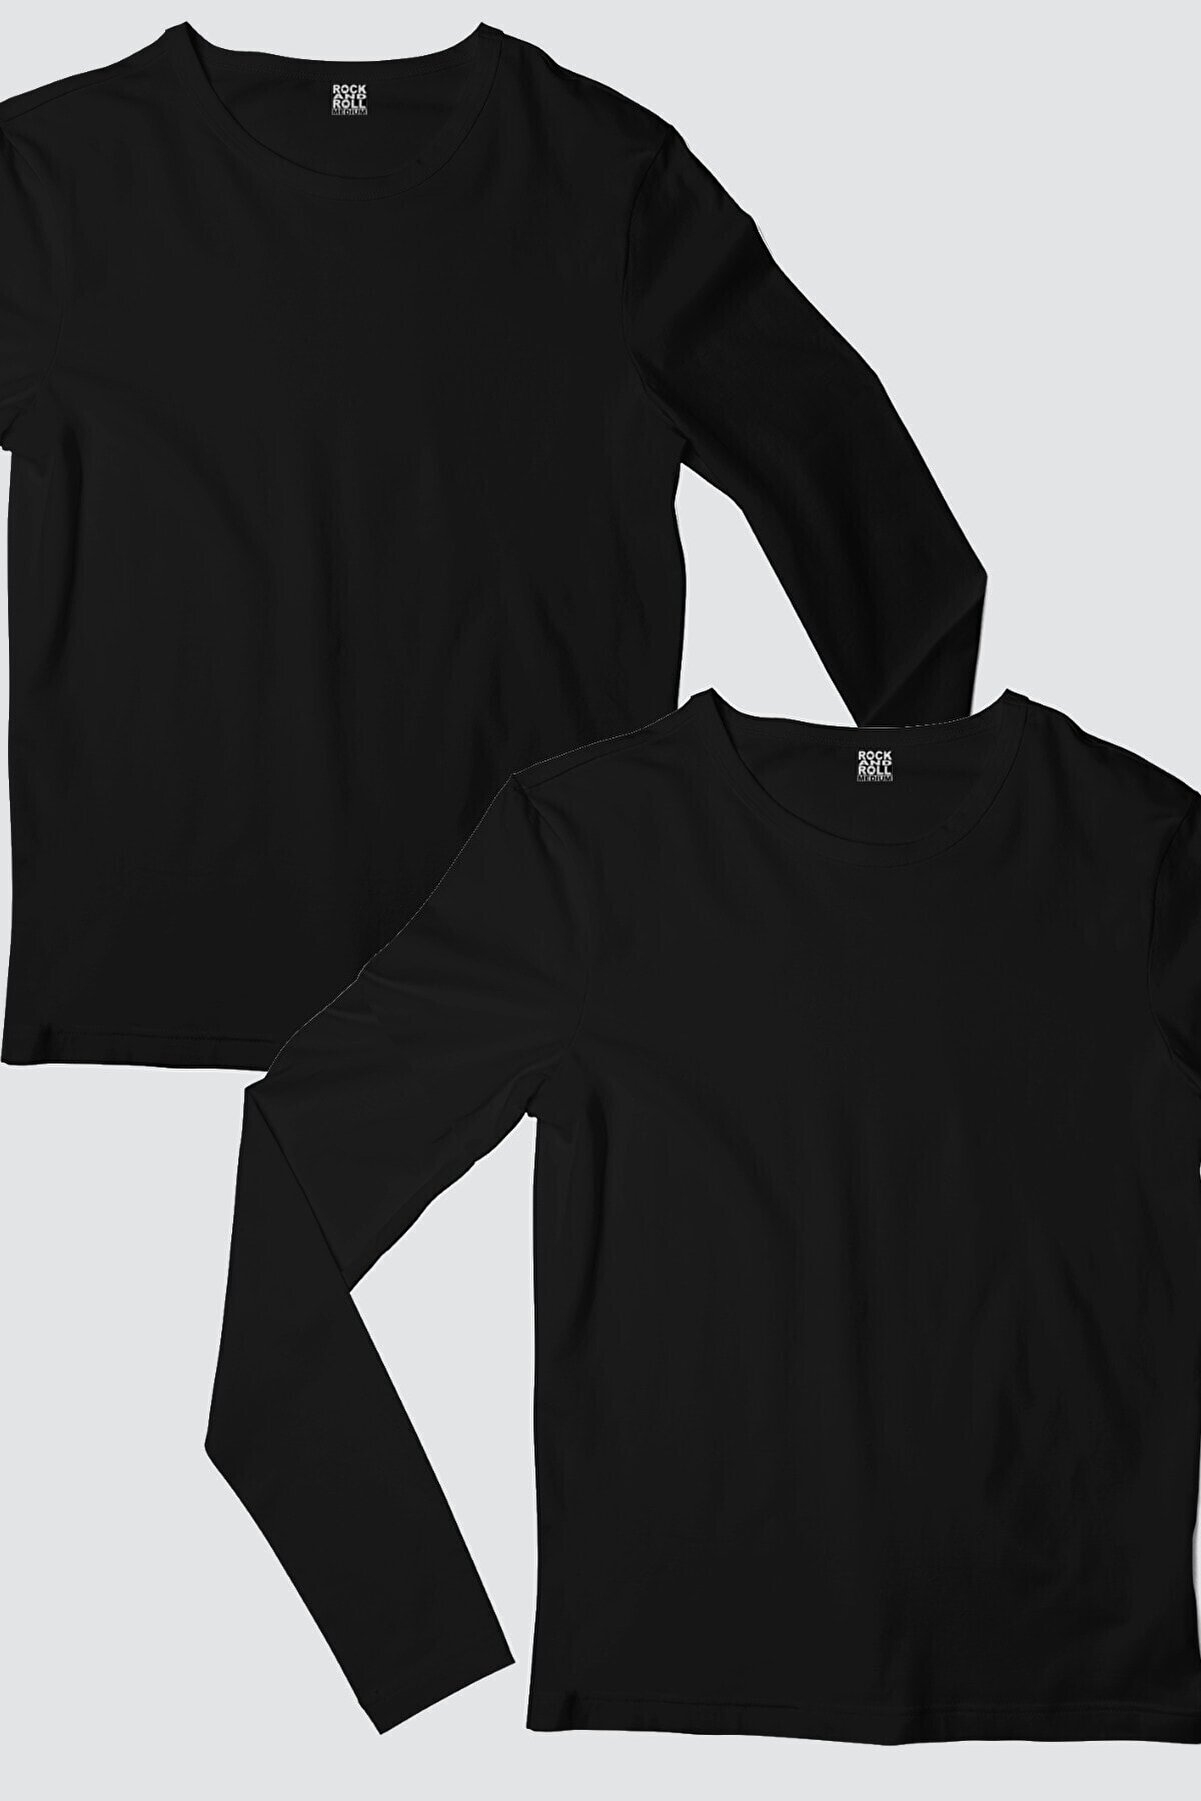 Düz, Baskısız Siyah Uzun Kollu Erkek T-shirt 2'li Eko Paket